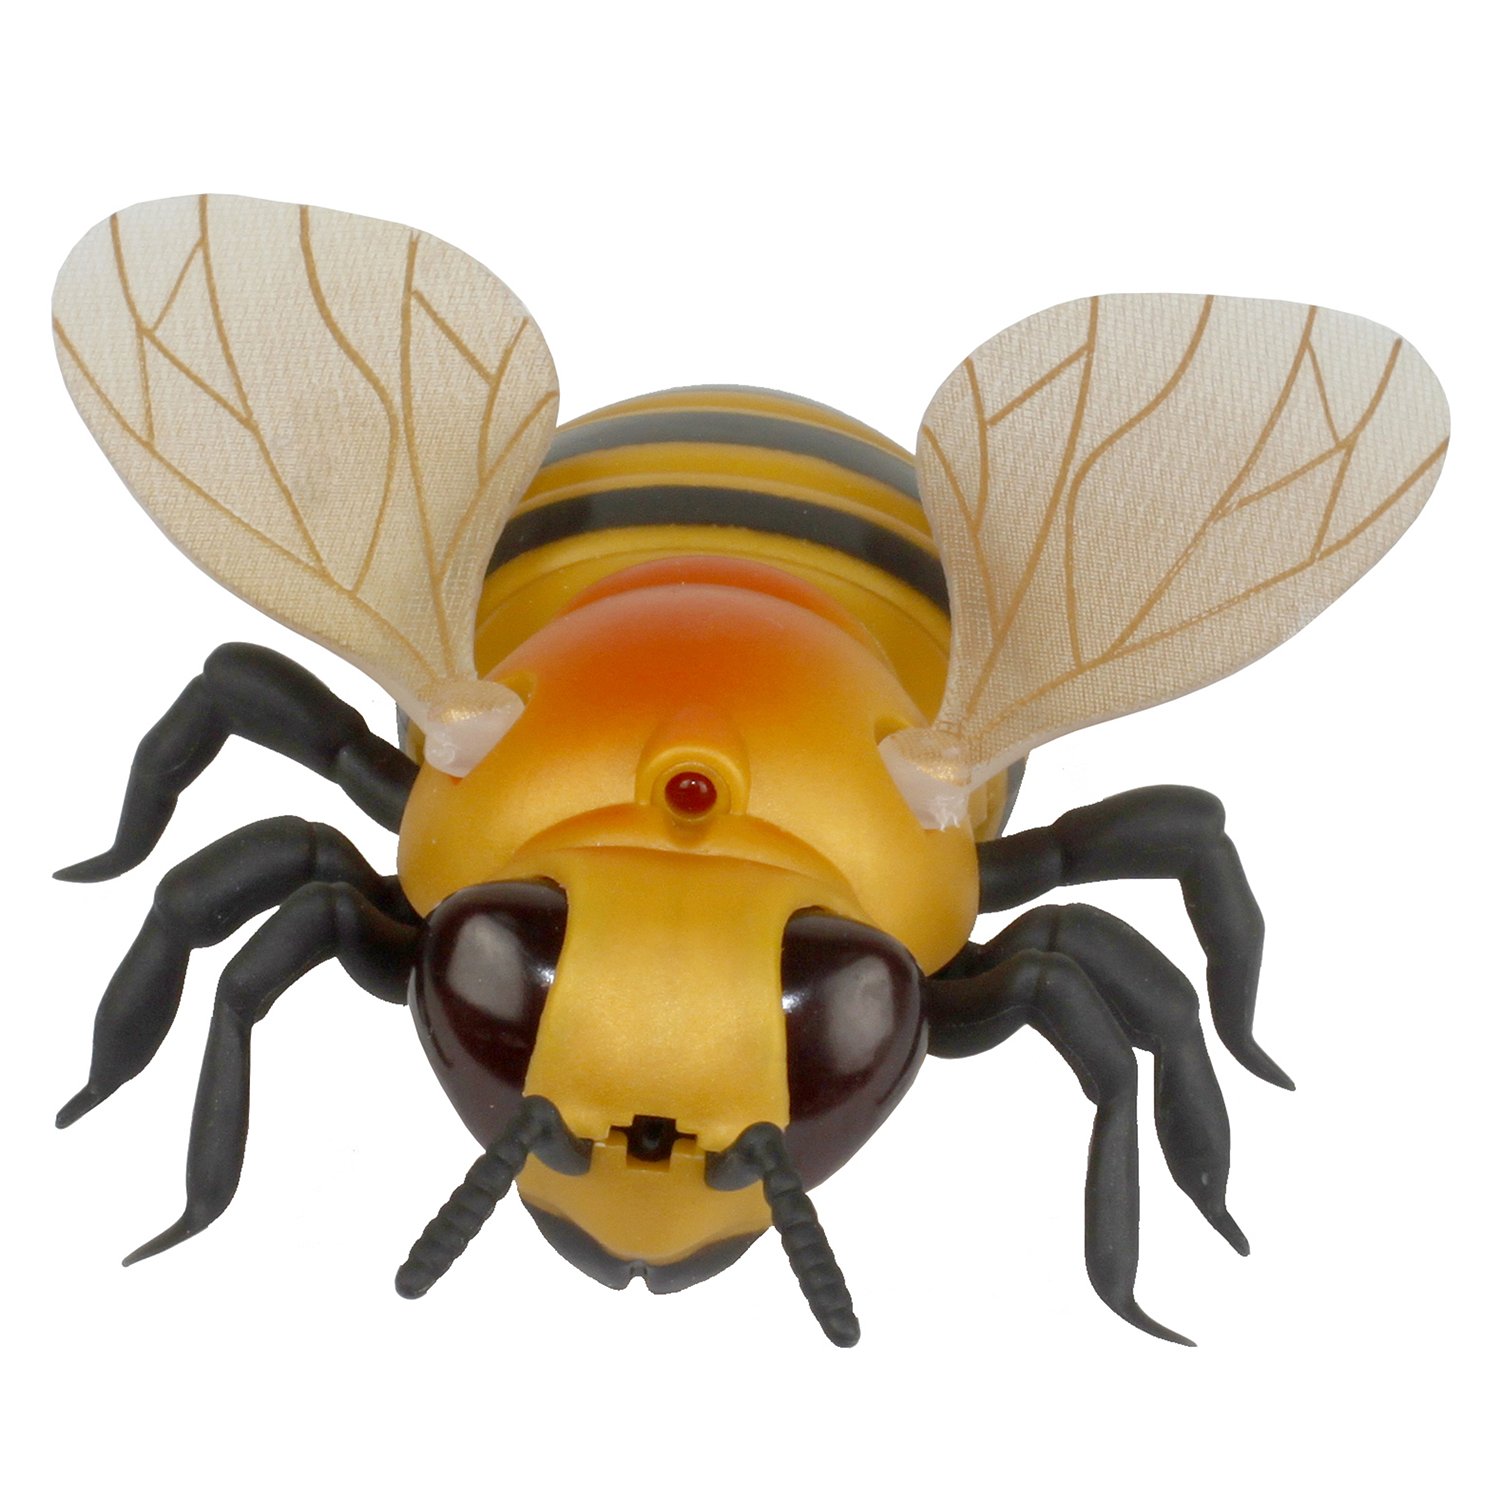 Игрушка на ИК-управлении Robo Life - Робо-пчела (на бат., свет)